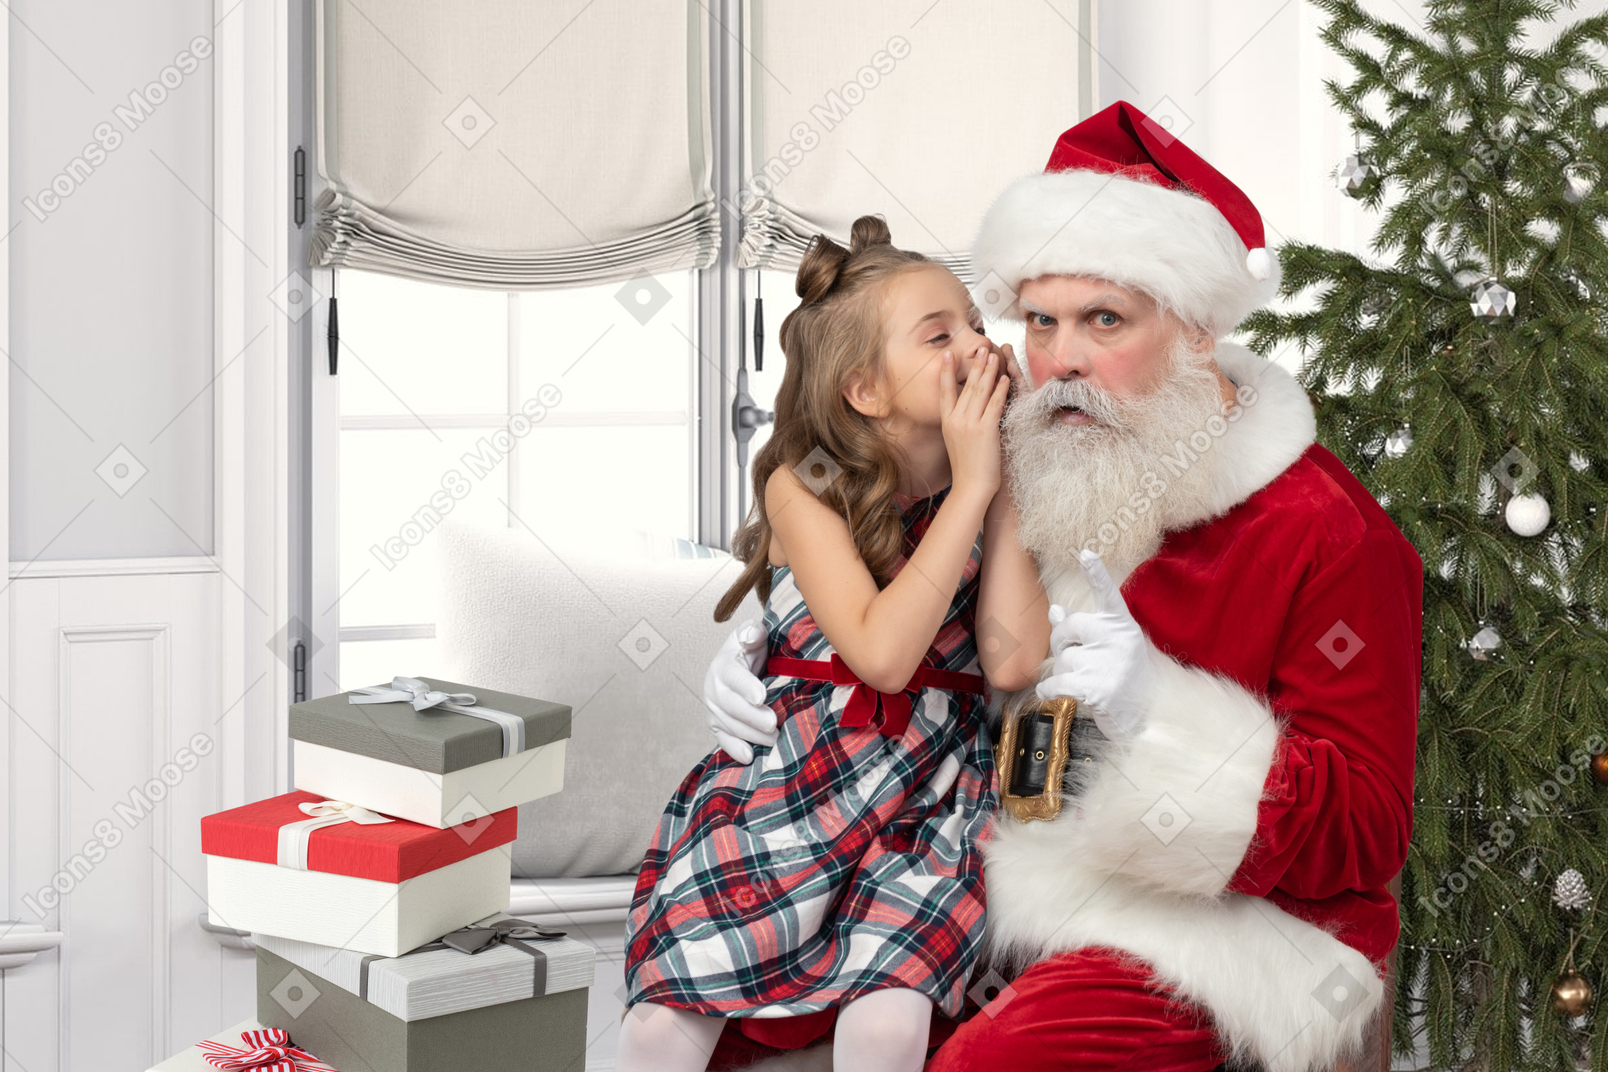 Weihnachtsmann und ein kleines mädchen